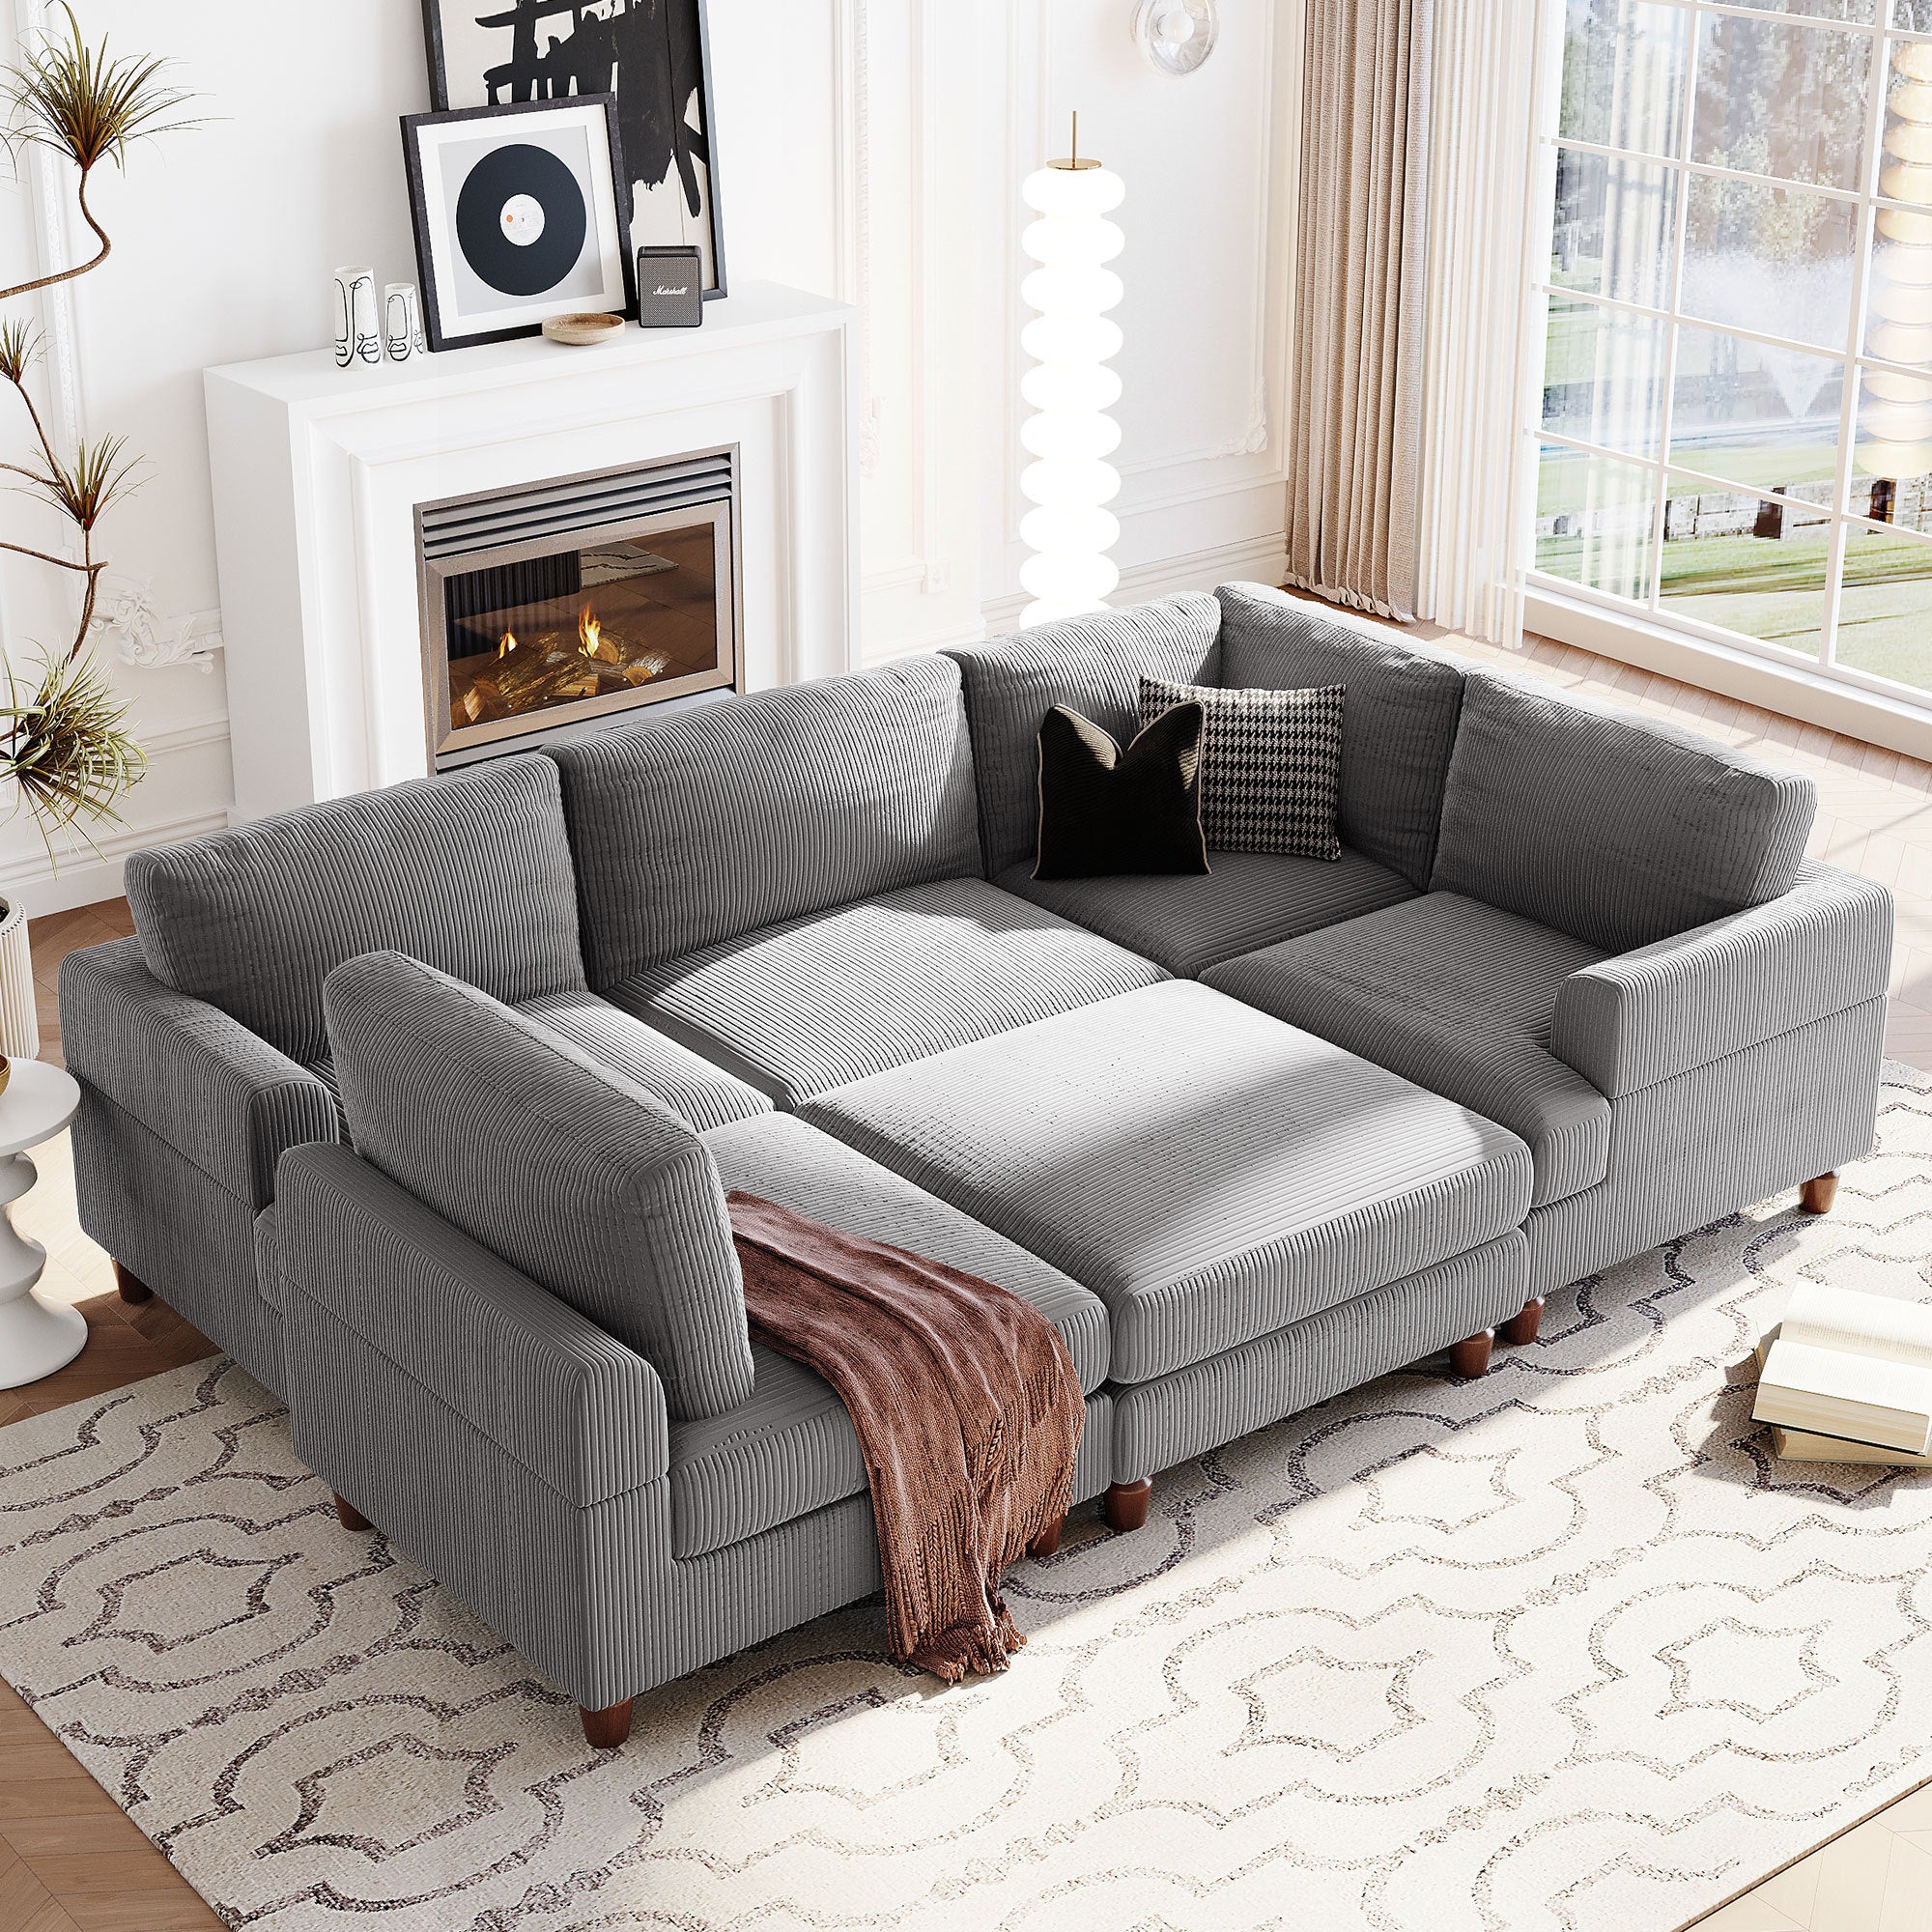 Modular Sectional Sofa: L-Shaped Ottoman, Spacious - Gray